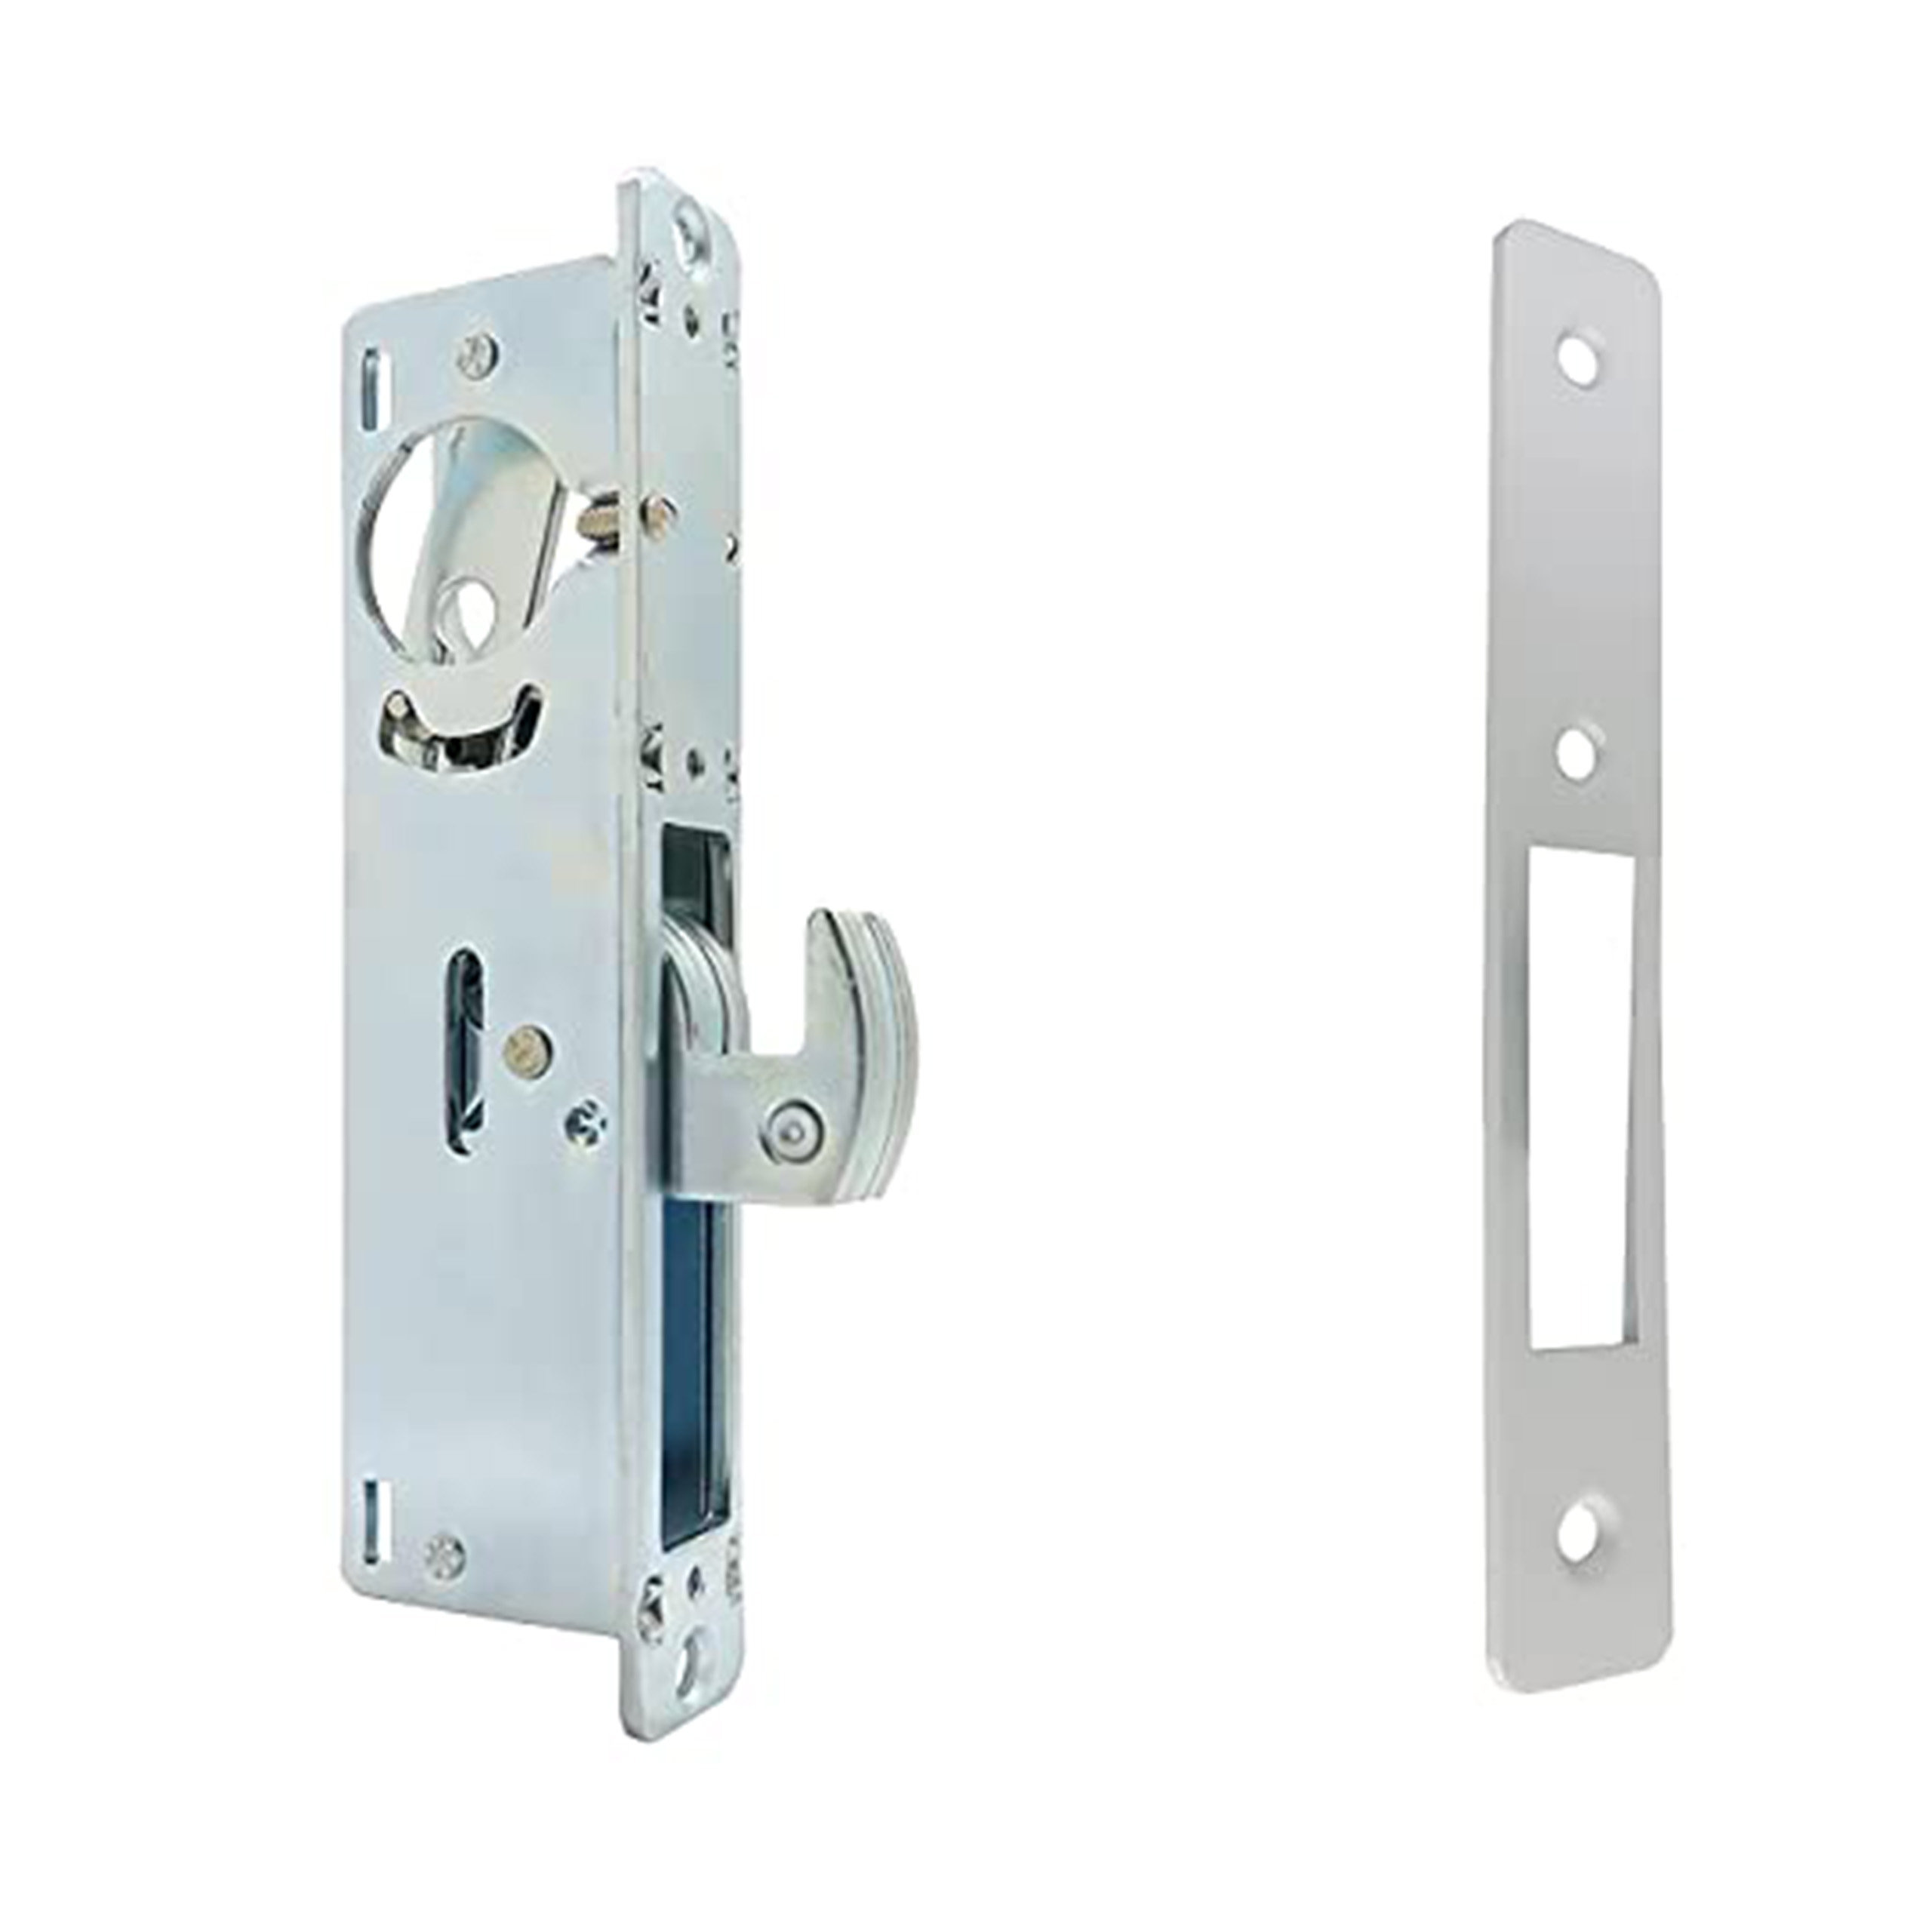 https://assets.wfcdn.com/im/73651049/compr-r85/2496/249685597/sidco-supply-storefront-door-lock-mortise-lock-commercial-door-locks-hook-bolt-lock-deadbolt-keyed-cylinder-combo-adams-rite-cam-in-aluminum-1-18-backset.jpg